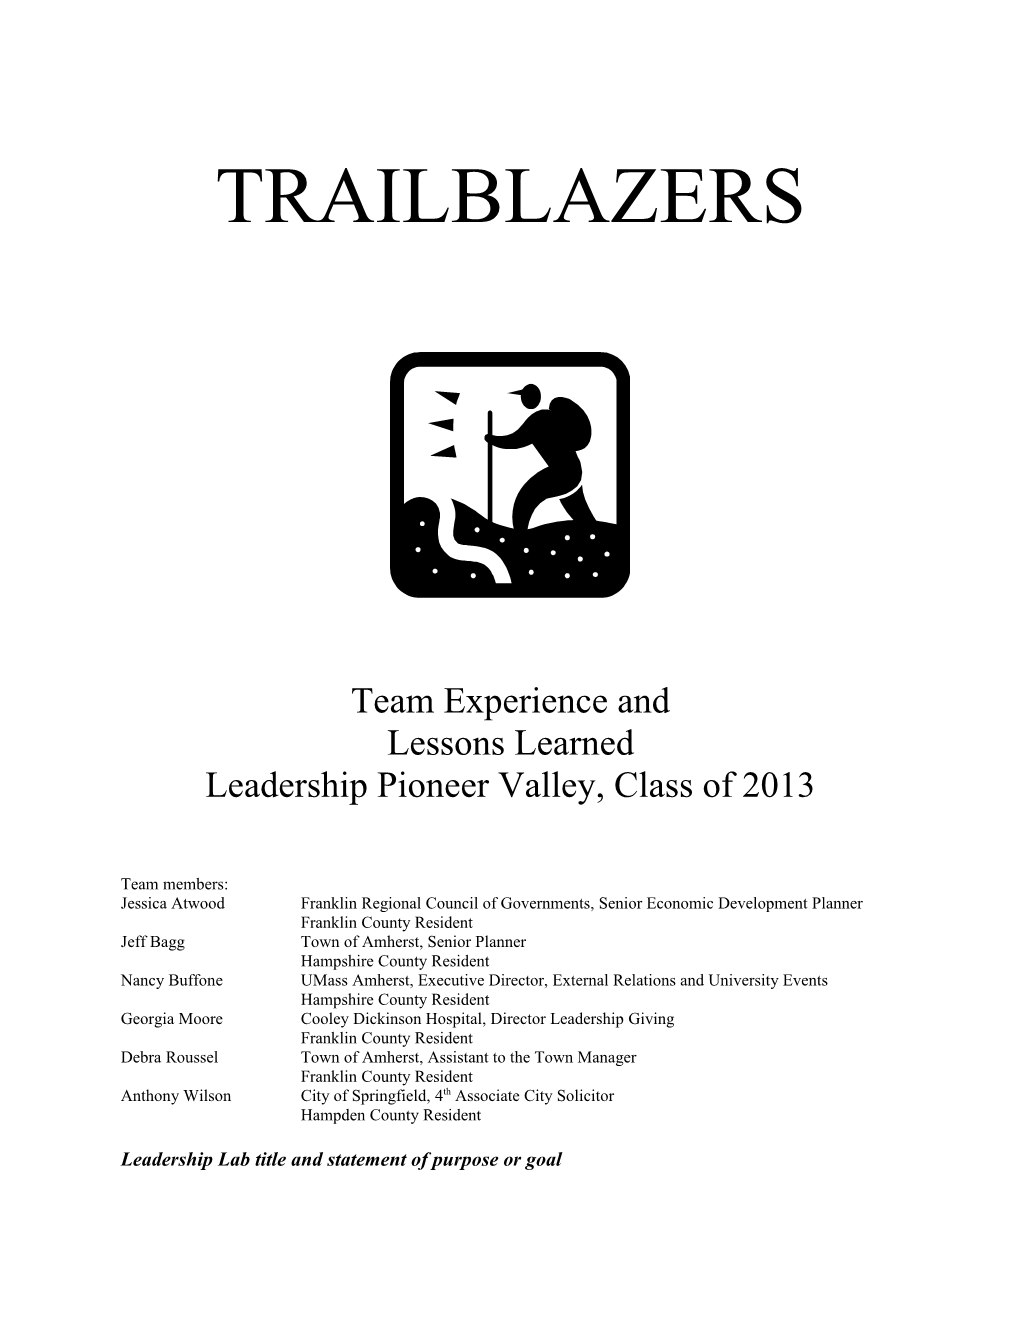 Leadership Pioneer Valley, Class of 2013